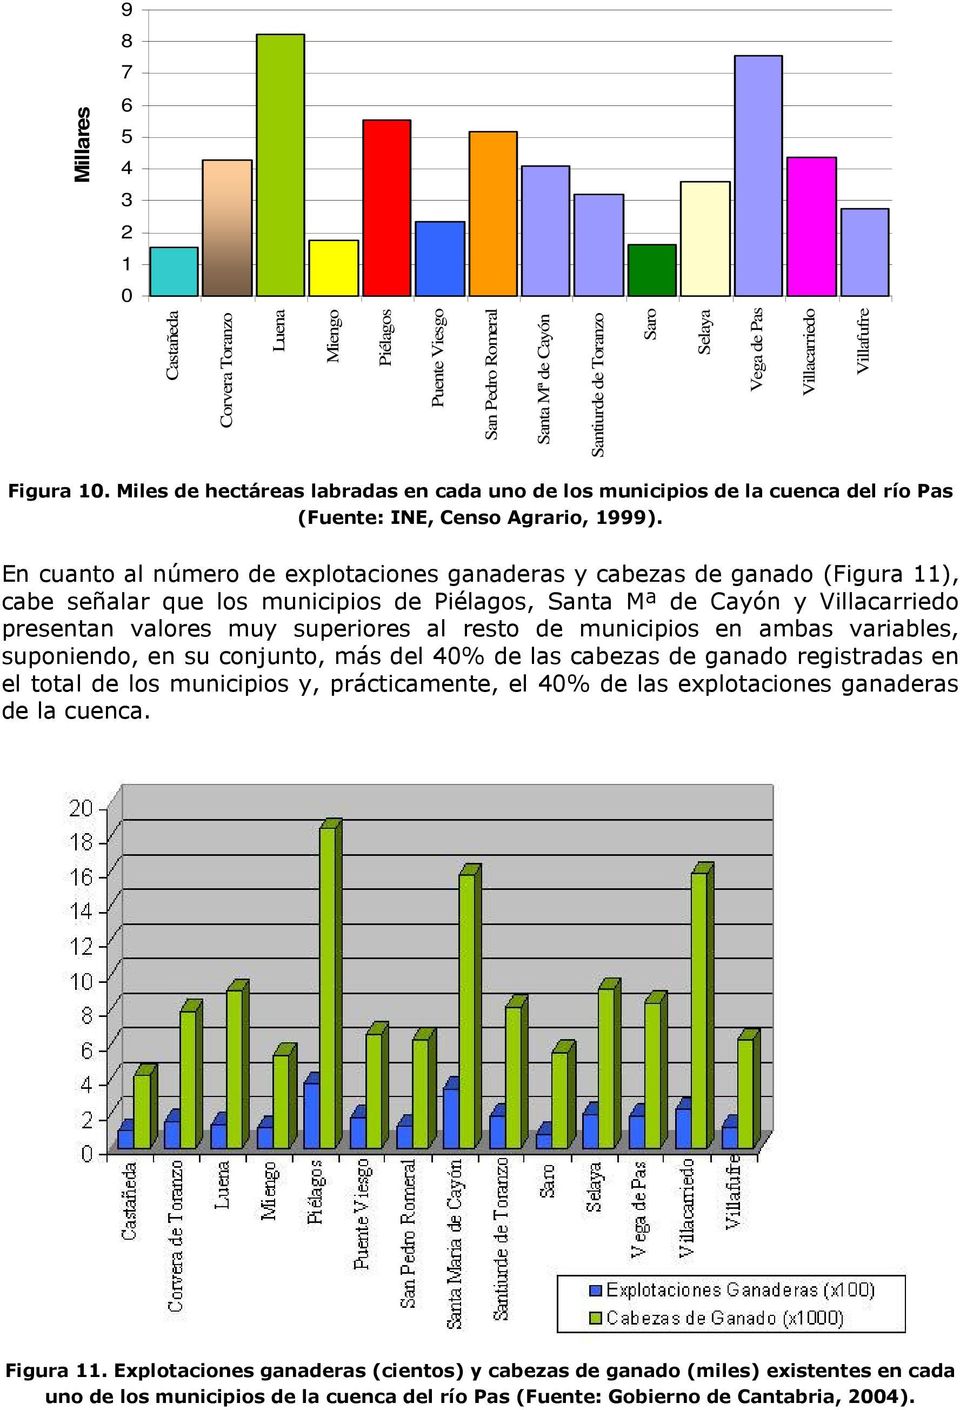 En cuanto al número de explotaciones ganaderas y cabezas de ganado (Figura 11), cabe señalar que los municipios de Piélagos, Santa Mª de Cayón y Villacarriedo presentan valores muy superiores al